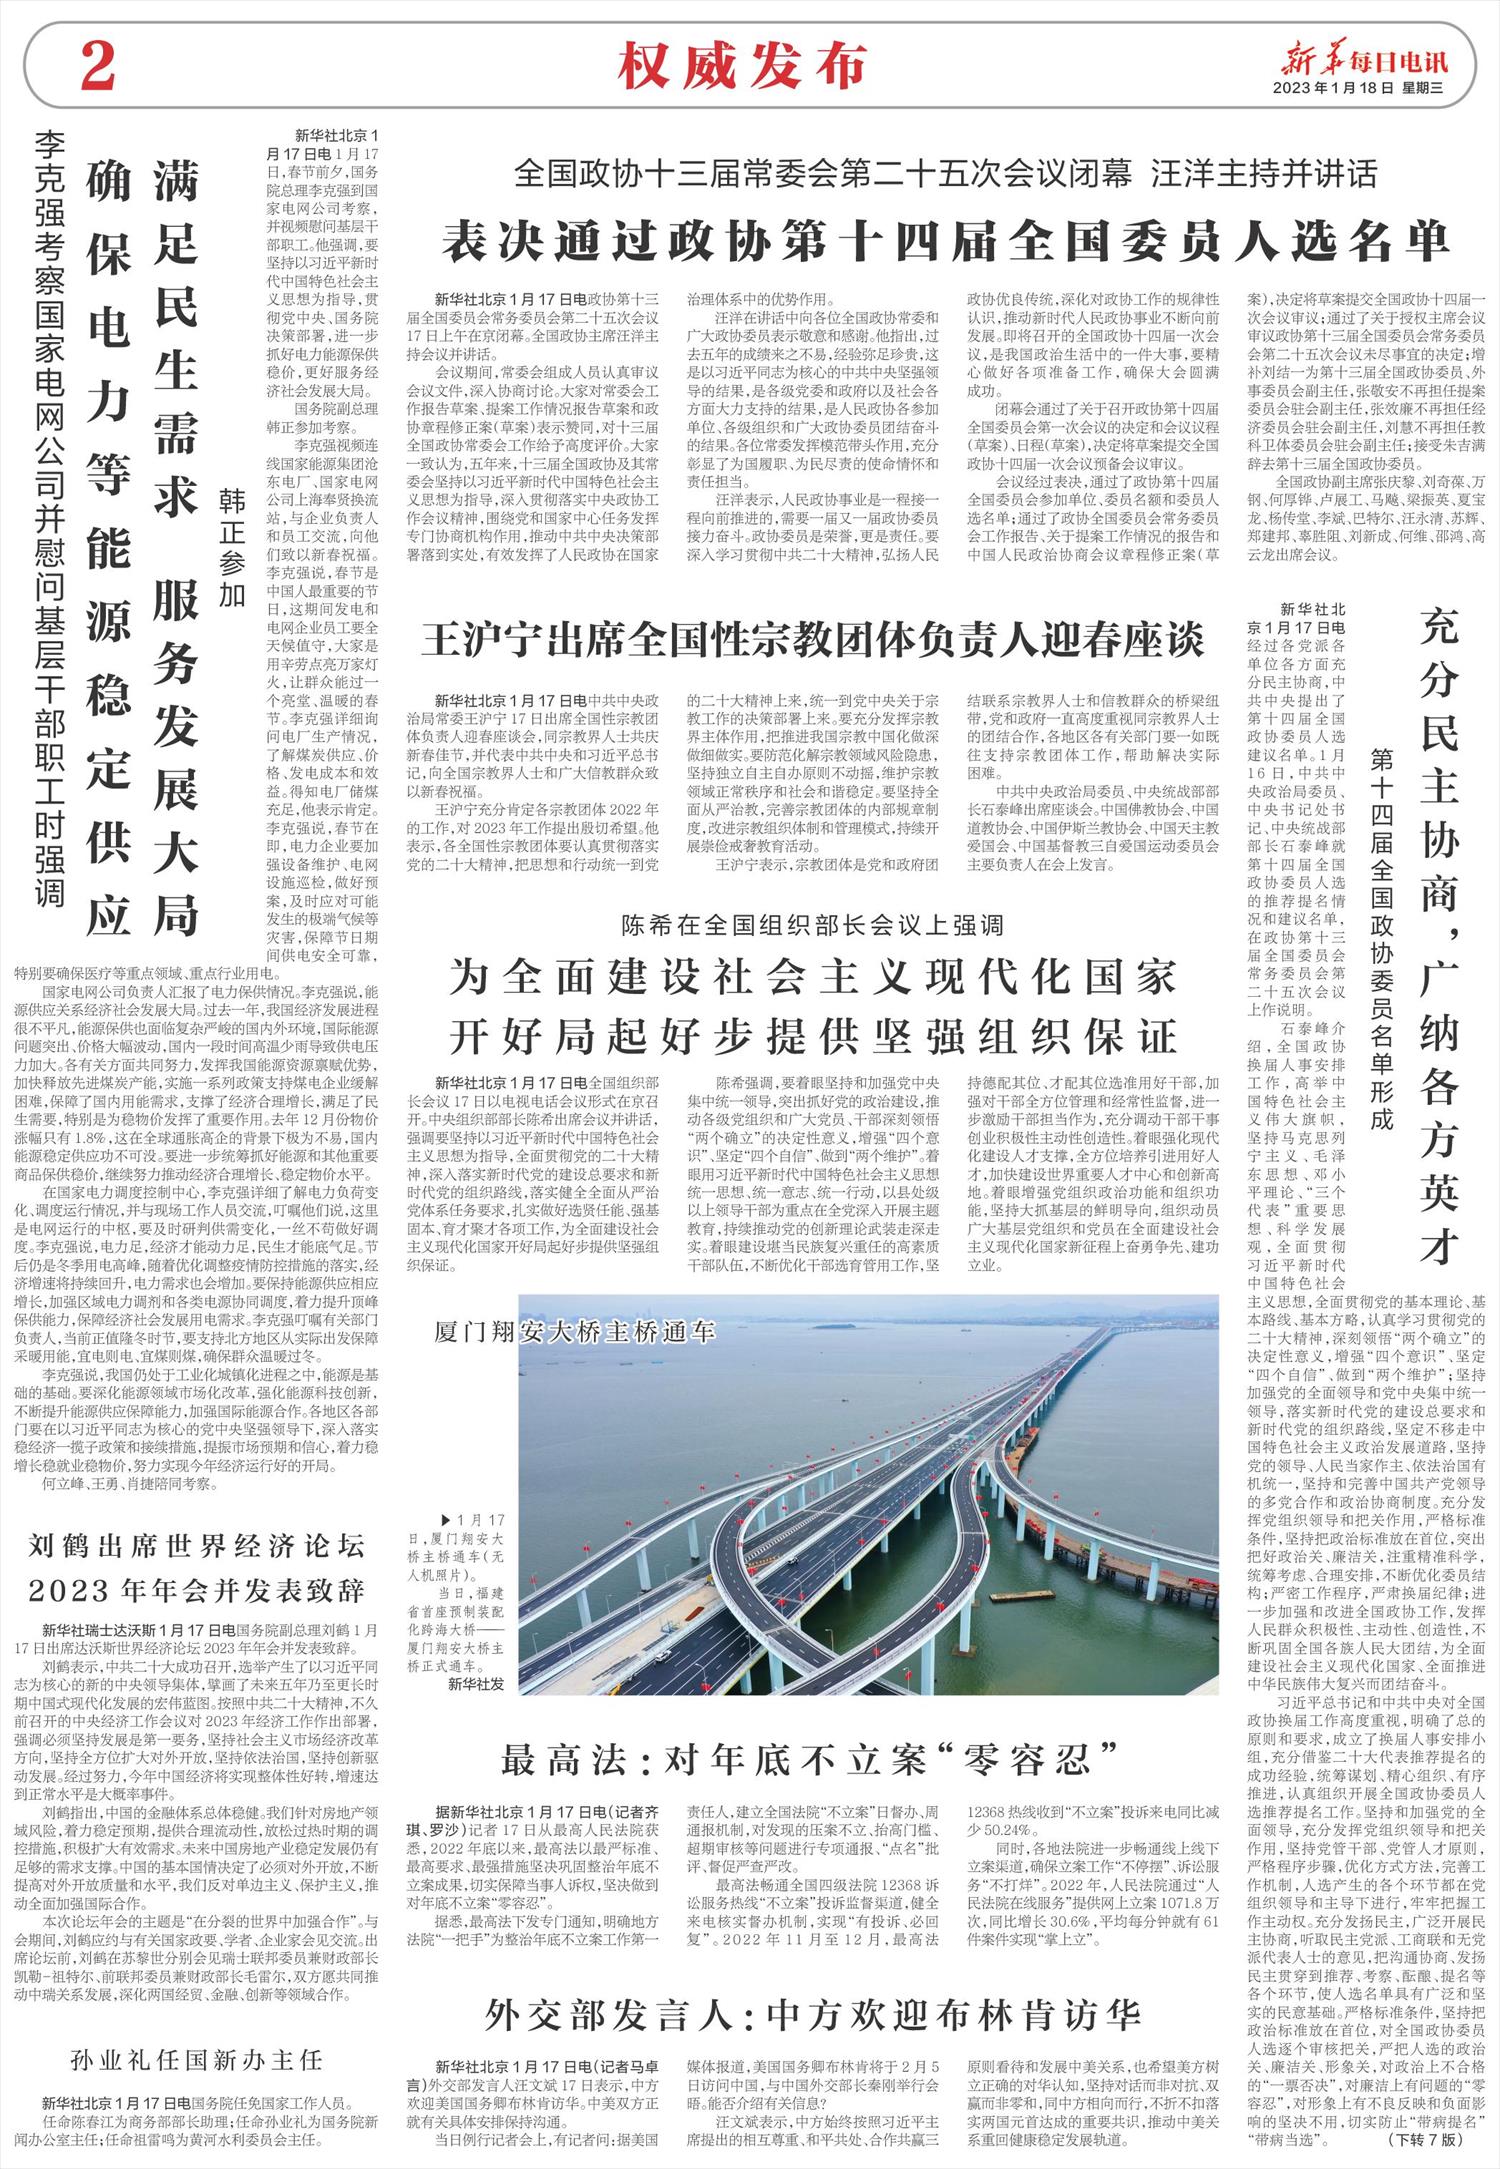 新华每日电讯-微报纸-2023年01月18日